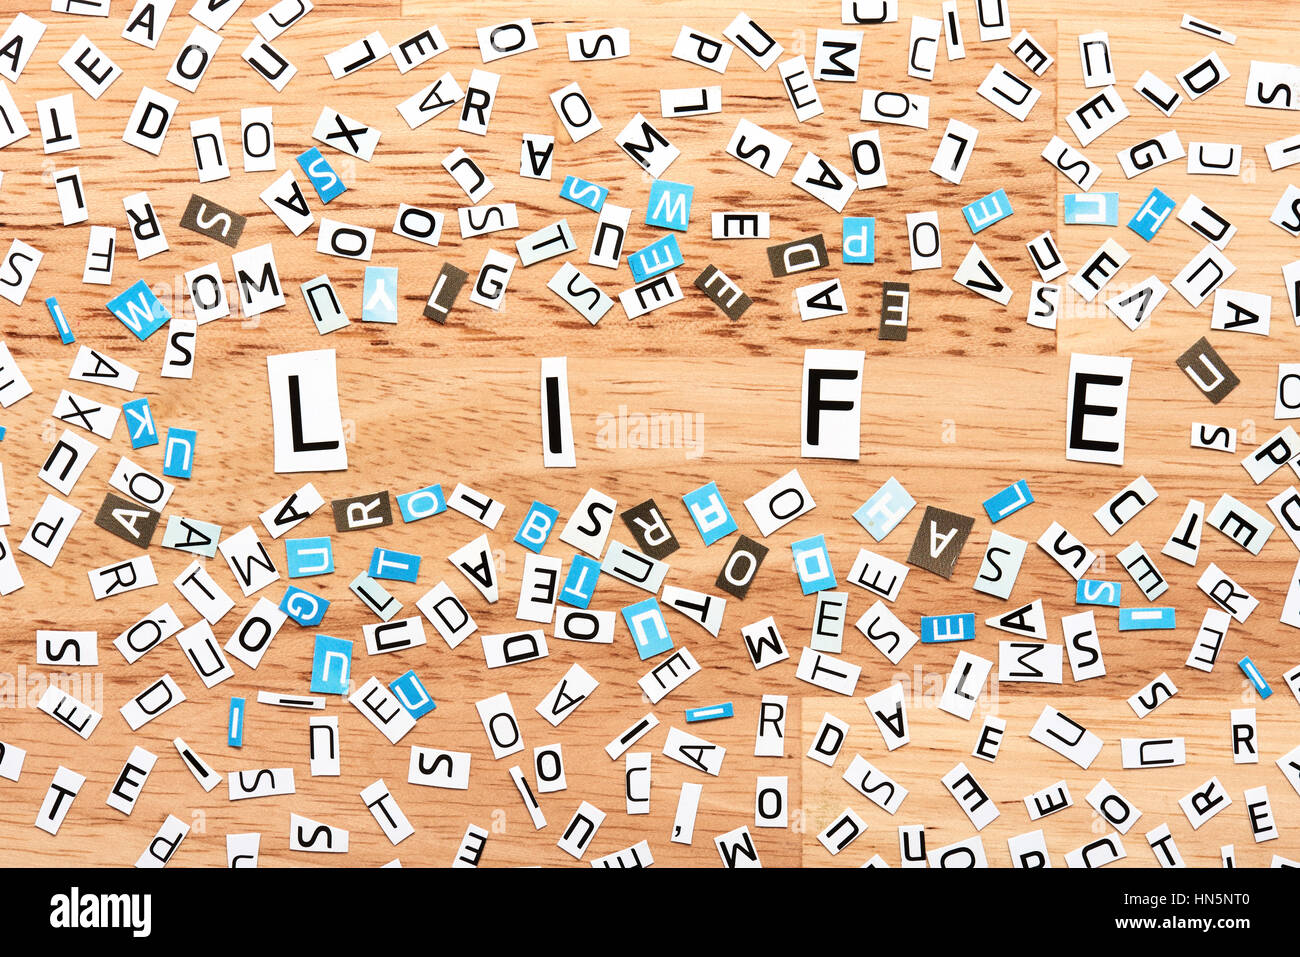 Leben das Wort Ausschneiden von Buchstaben auf Holztisch Stockfoto